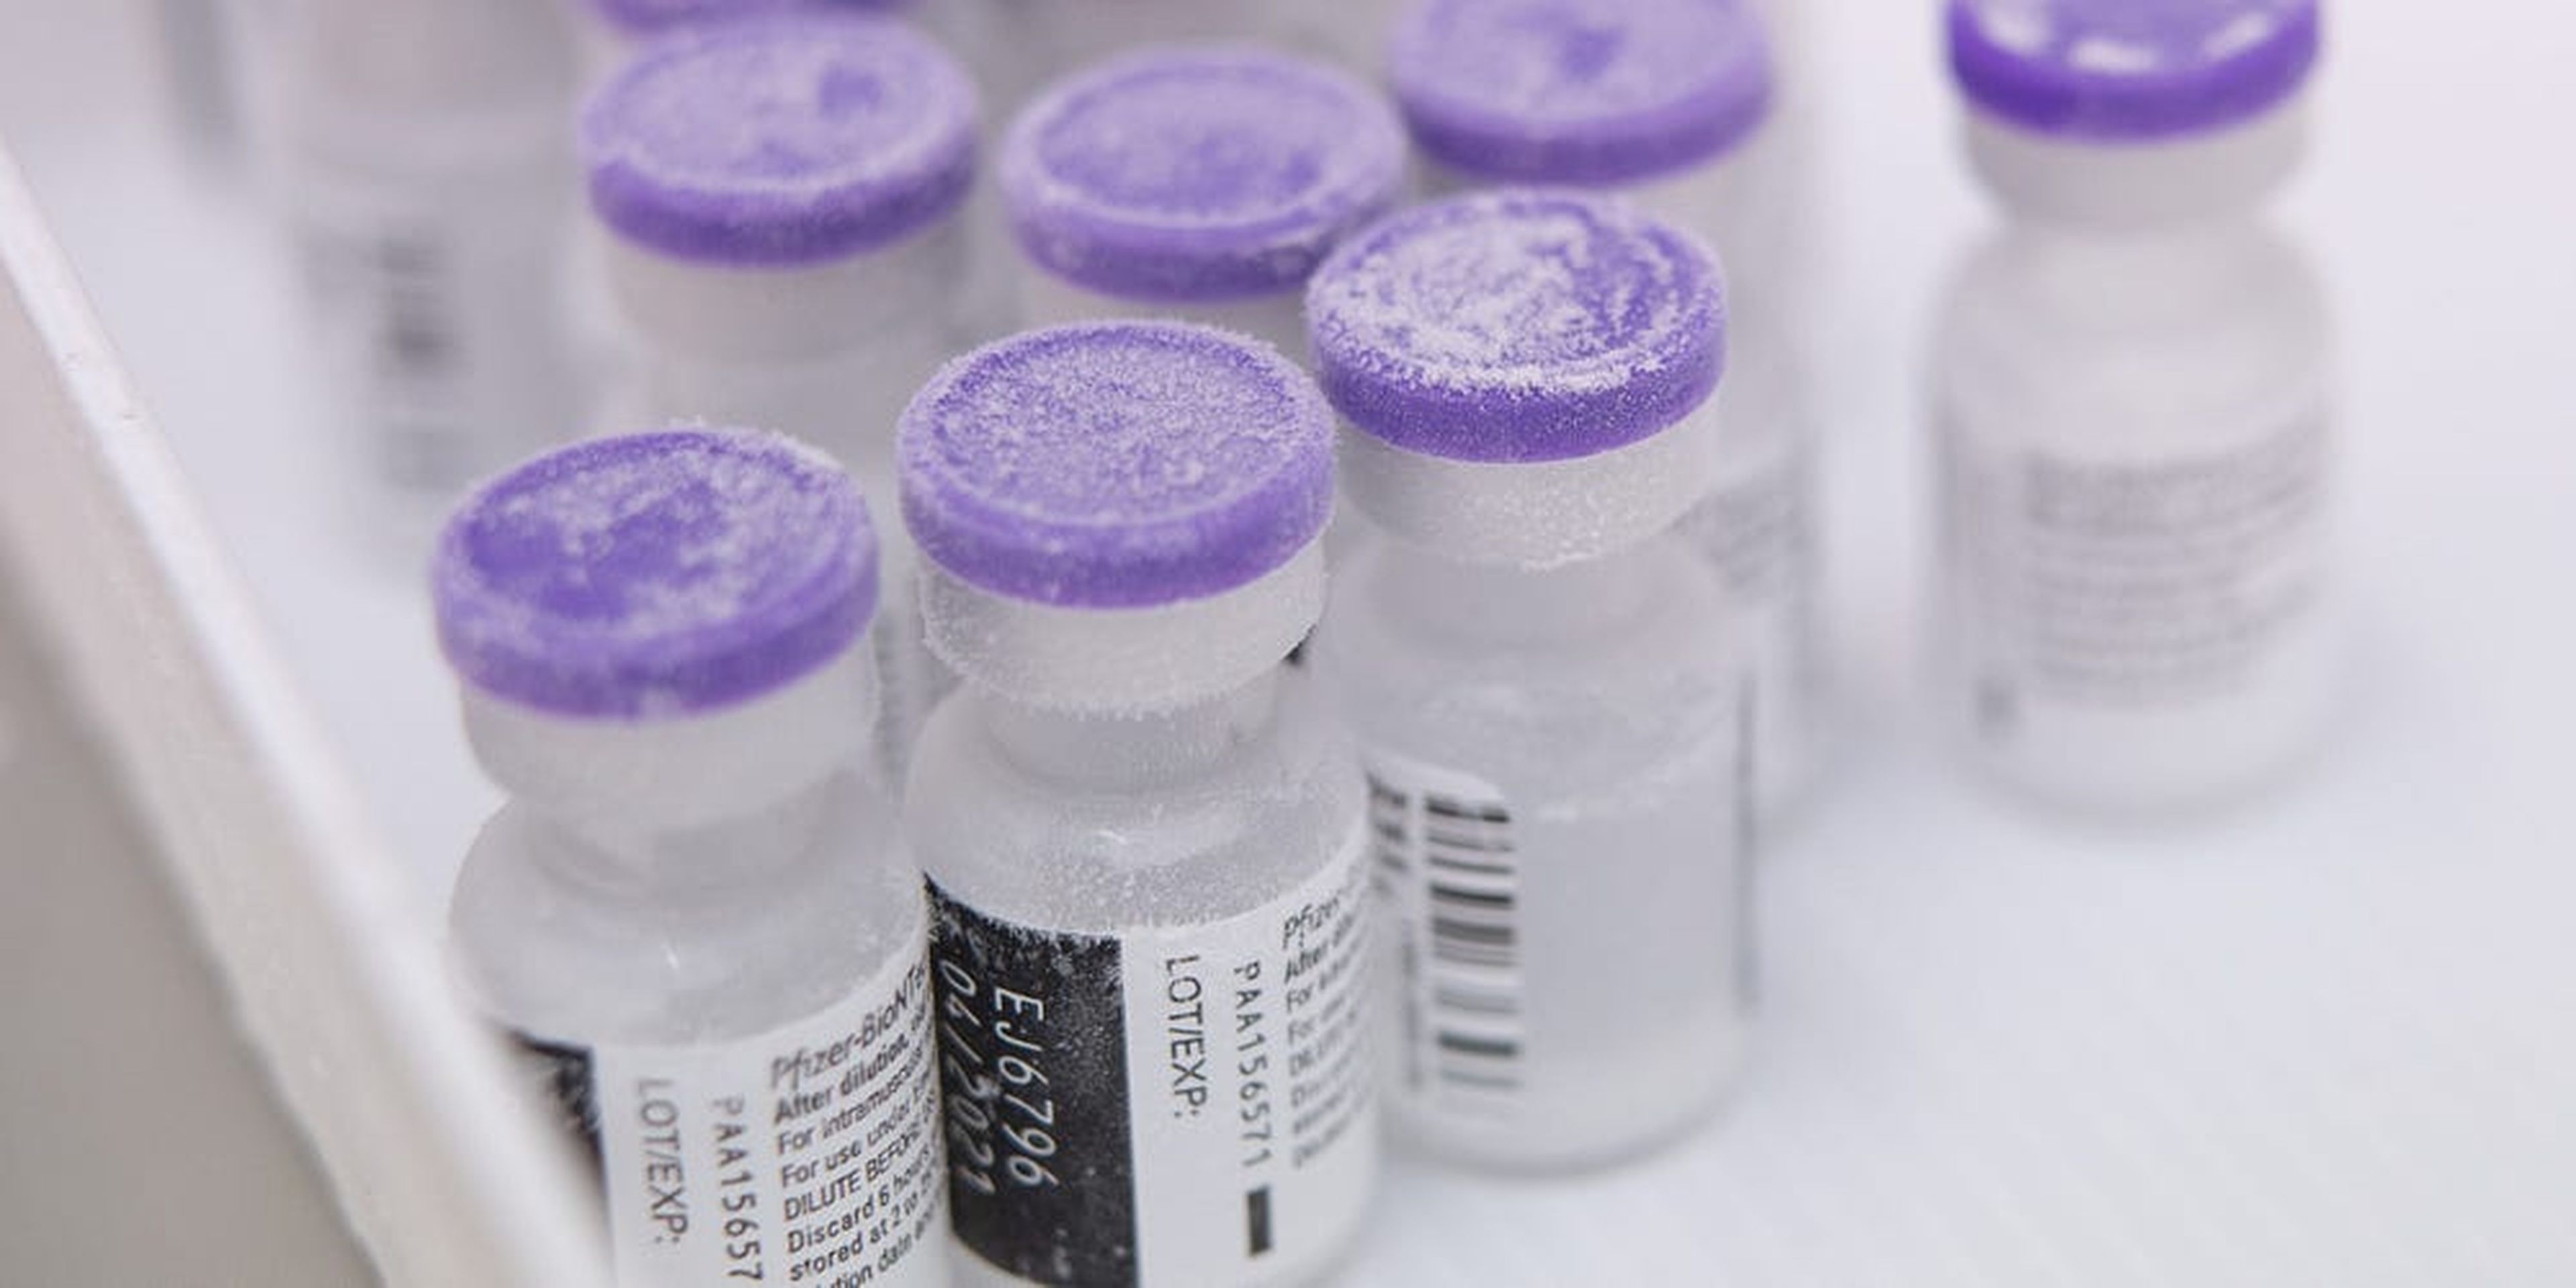 La vacuna contra el coronavirus de Pfizer y BioNTech parece eficaz contra las mutaciones, según un nuevo estudio.